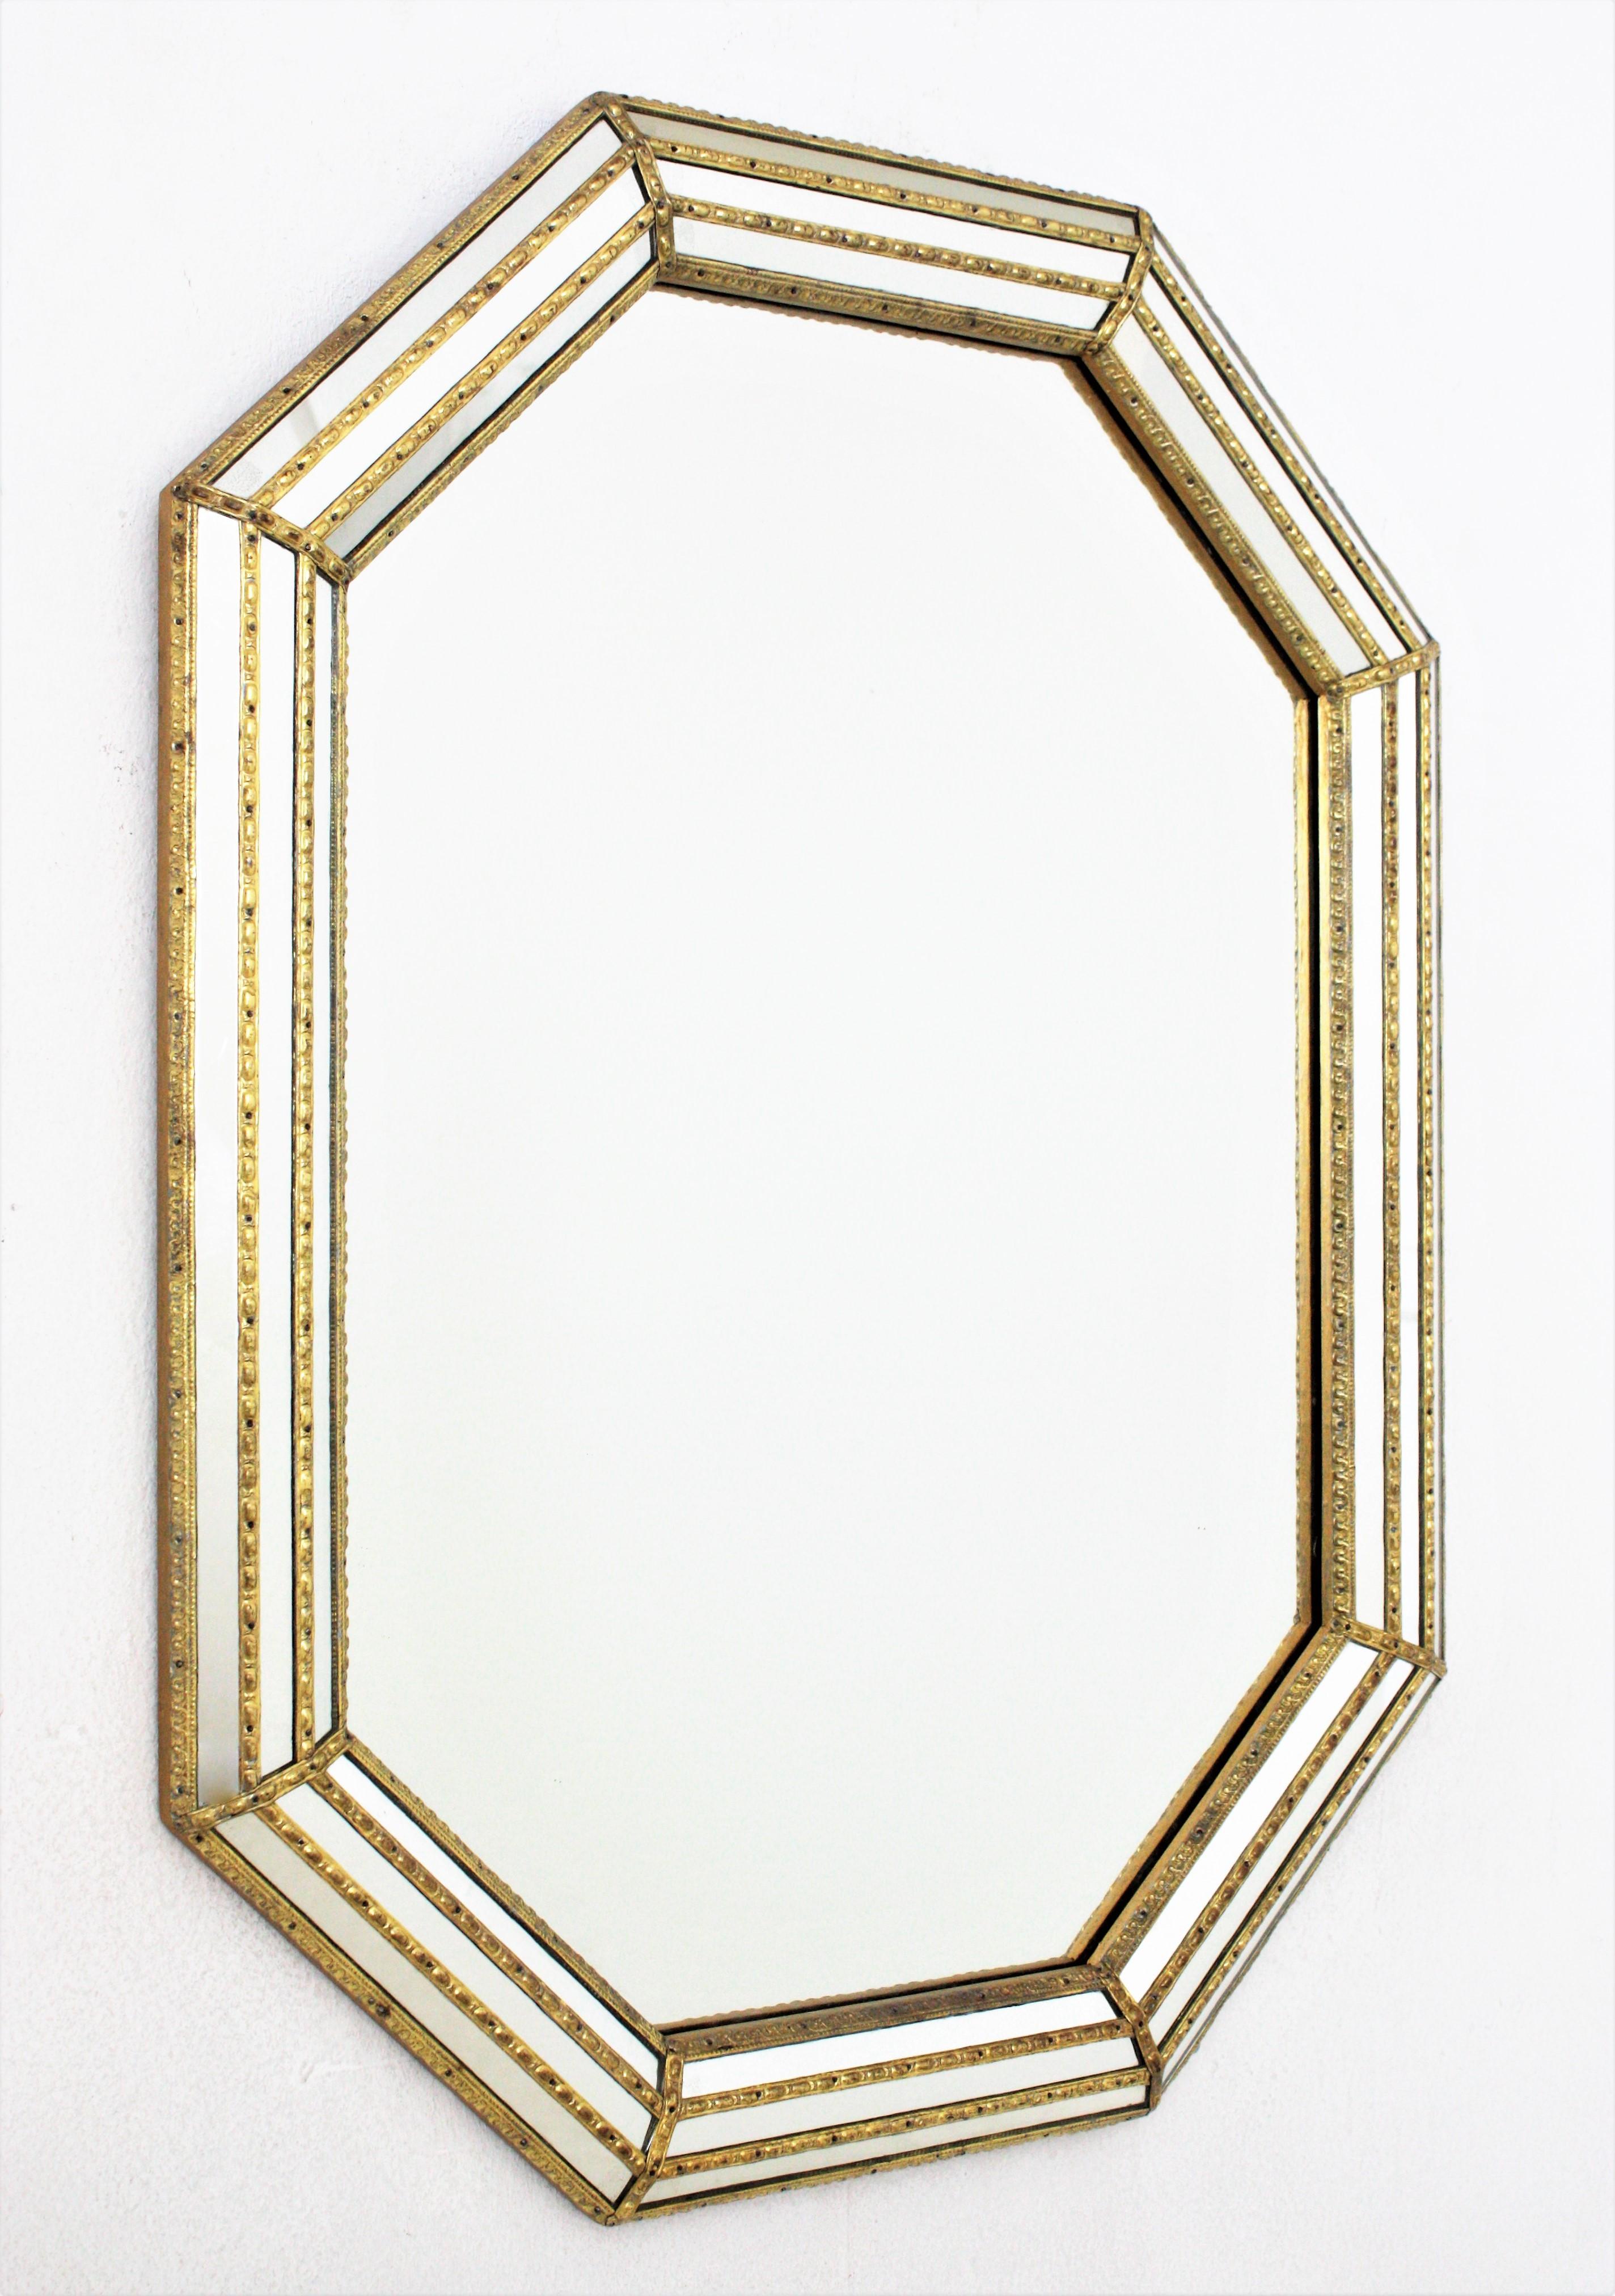 Achteckiger moderner venezianischer Spiegel mit Spiegel und Messingrahmen
Achteckiger Wandspiegel im venezianischen Stil mit vergoldeten Metallakzenten, Spanien, 1950er Jahre
Dieser achteckige Spiegel hat einen dreifachen Spiegelrahmen. Die